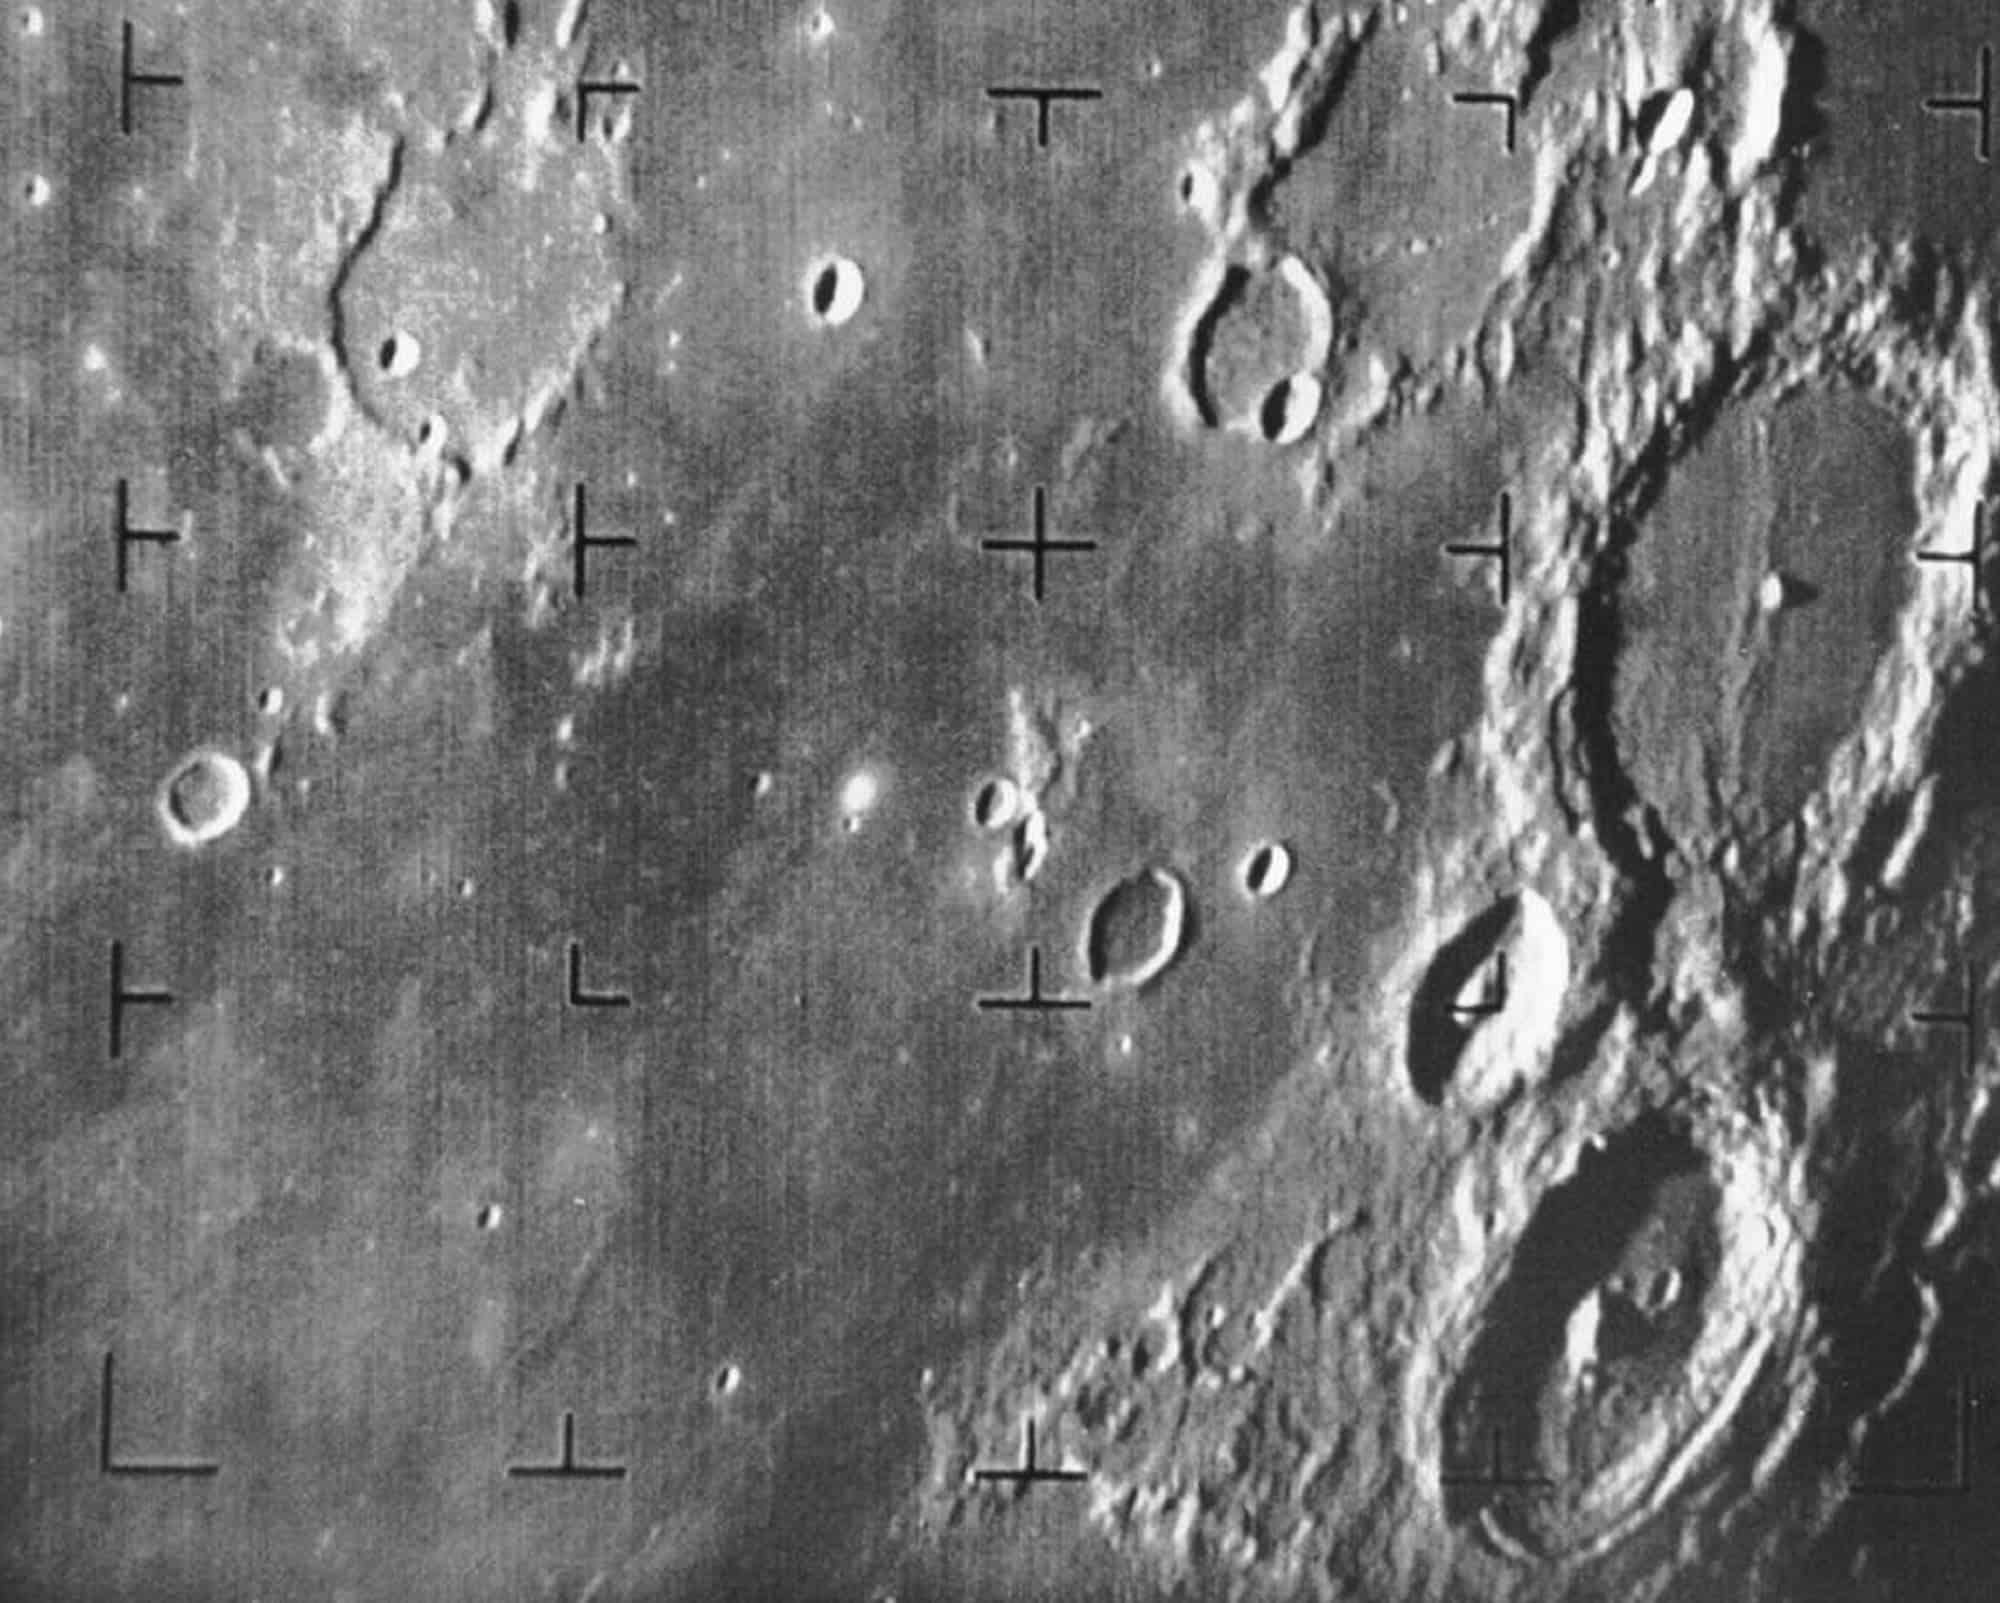 صورة بالأبيض والأسود لفوهات الصدم القمرية التقطتها مركبة رينجر 7 الفضائية التابعة لوكالة ناسا.